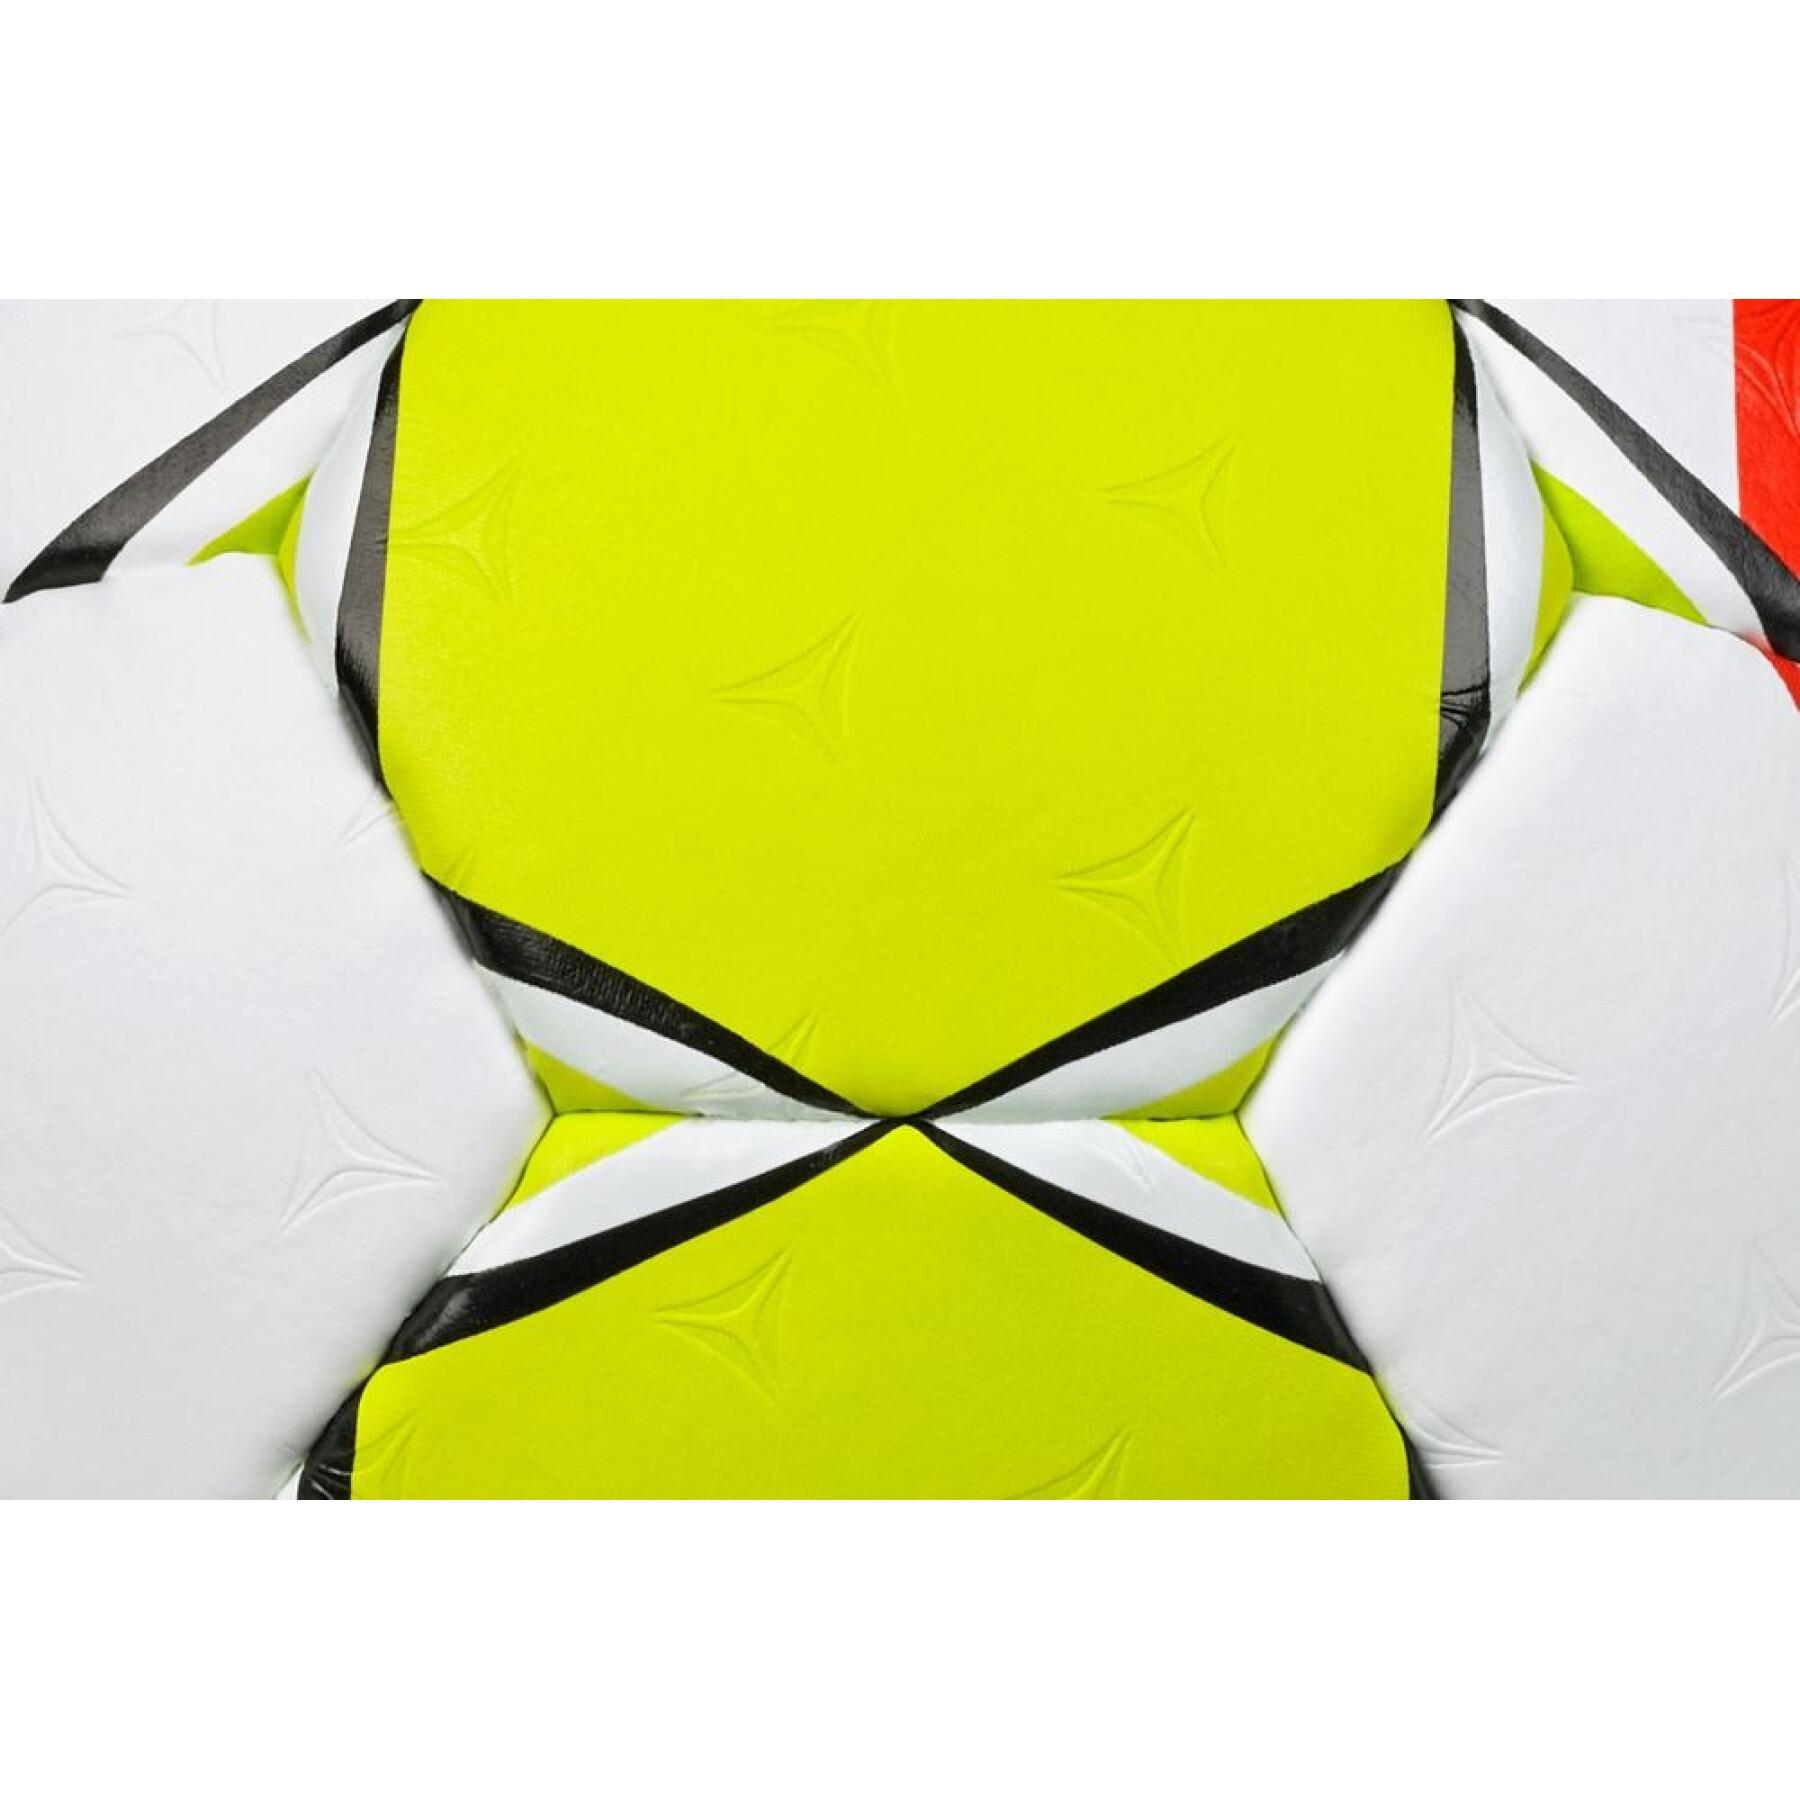 Handballreplica ehf euro feminin 2022